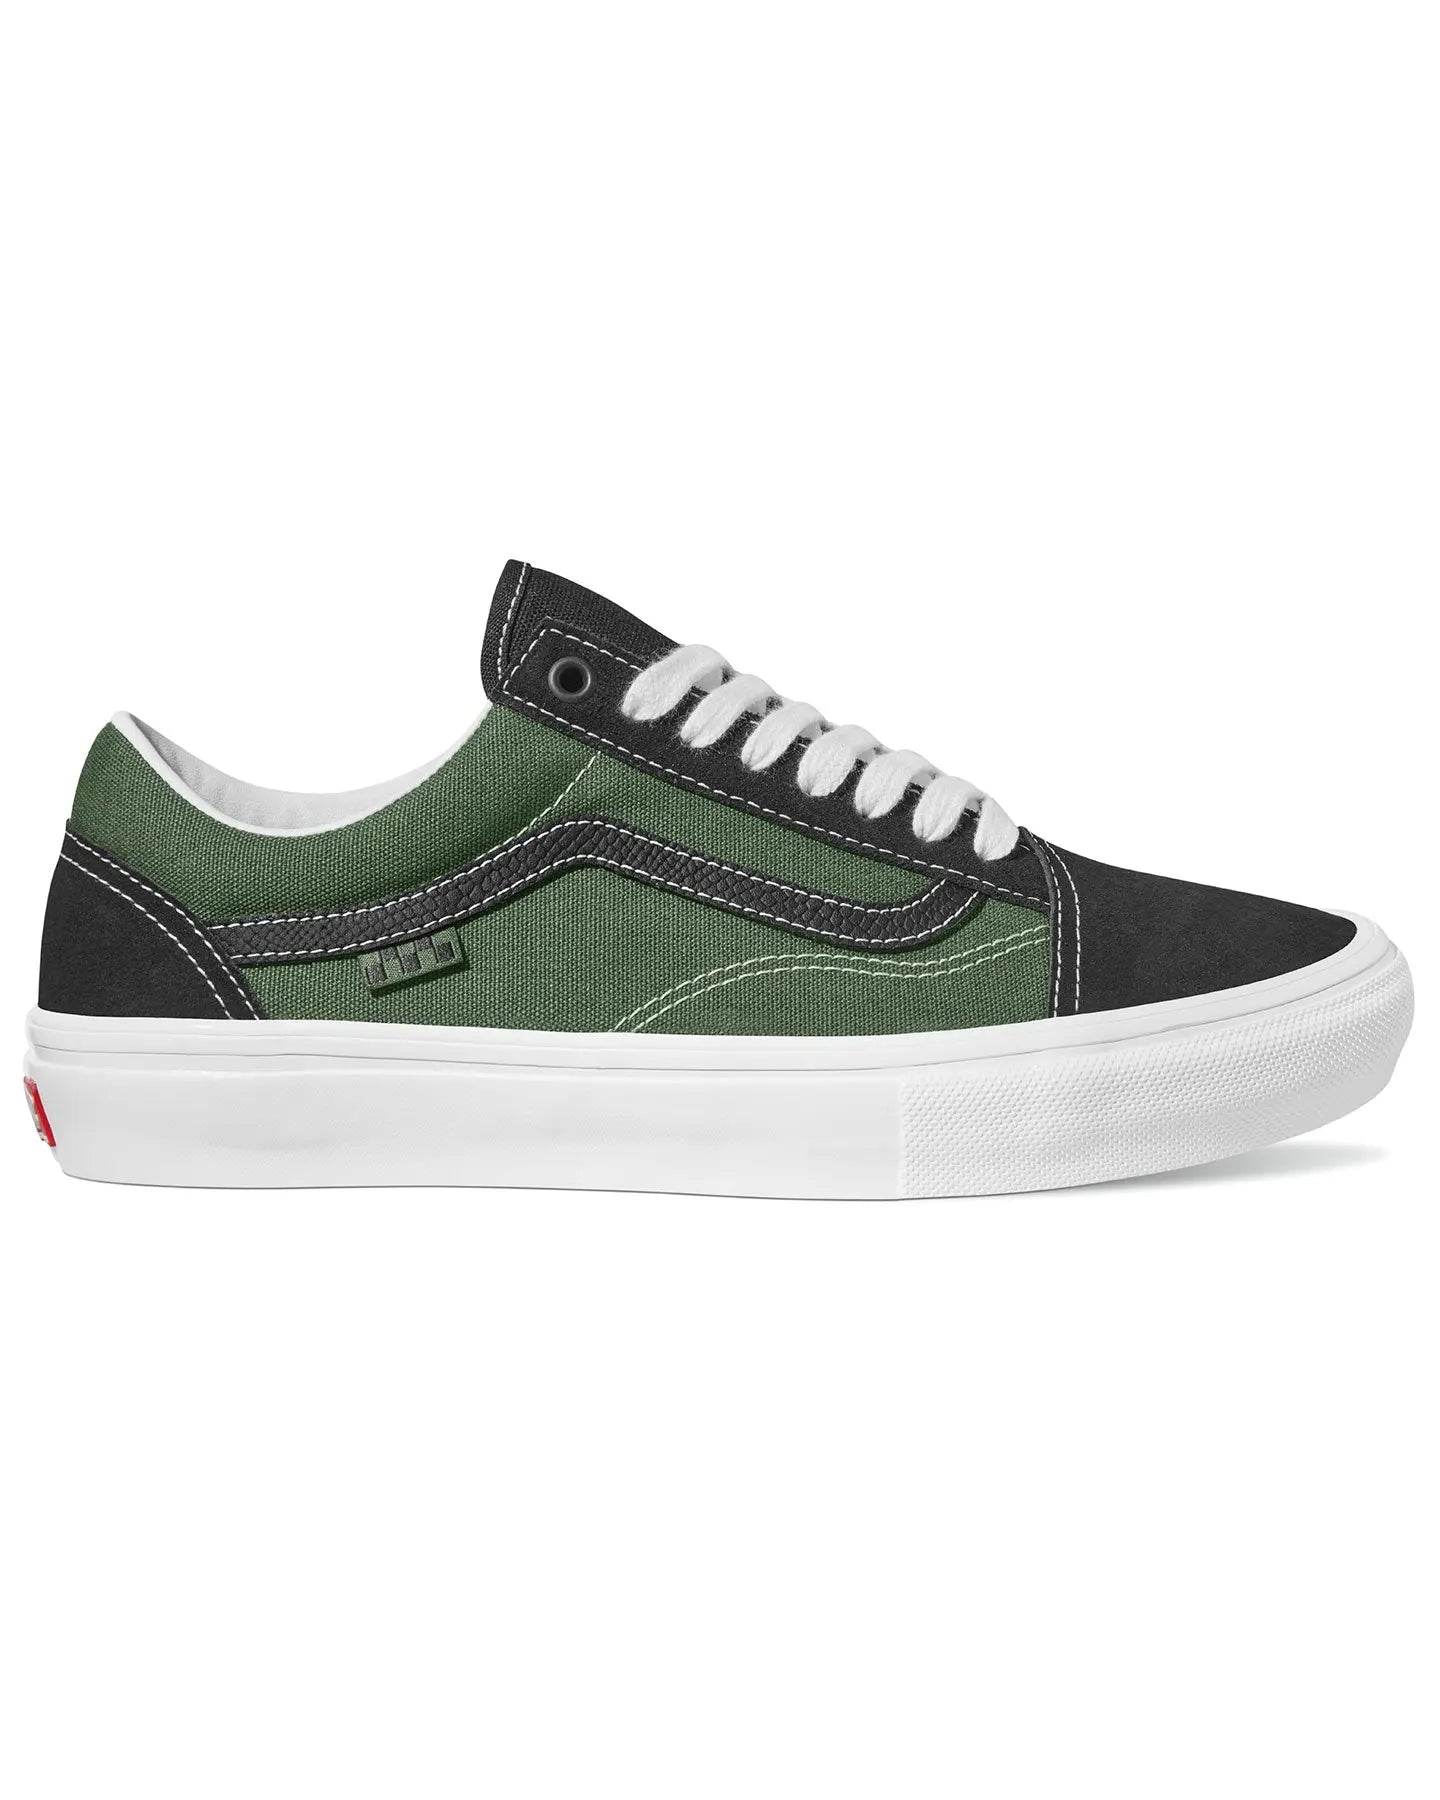 Vans Skate Old Skool - Safari Black / Greenery Footwear